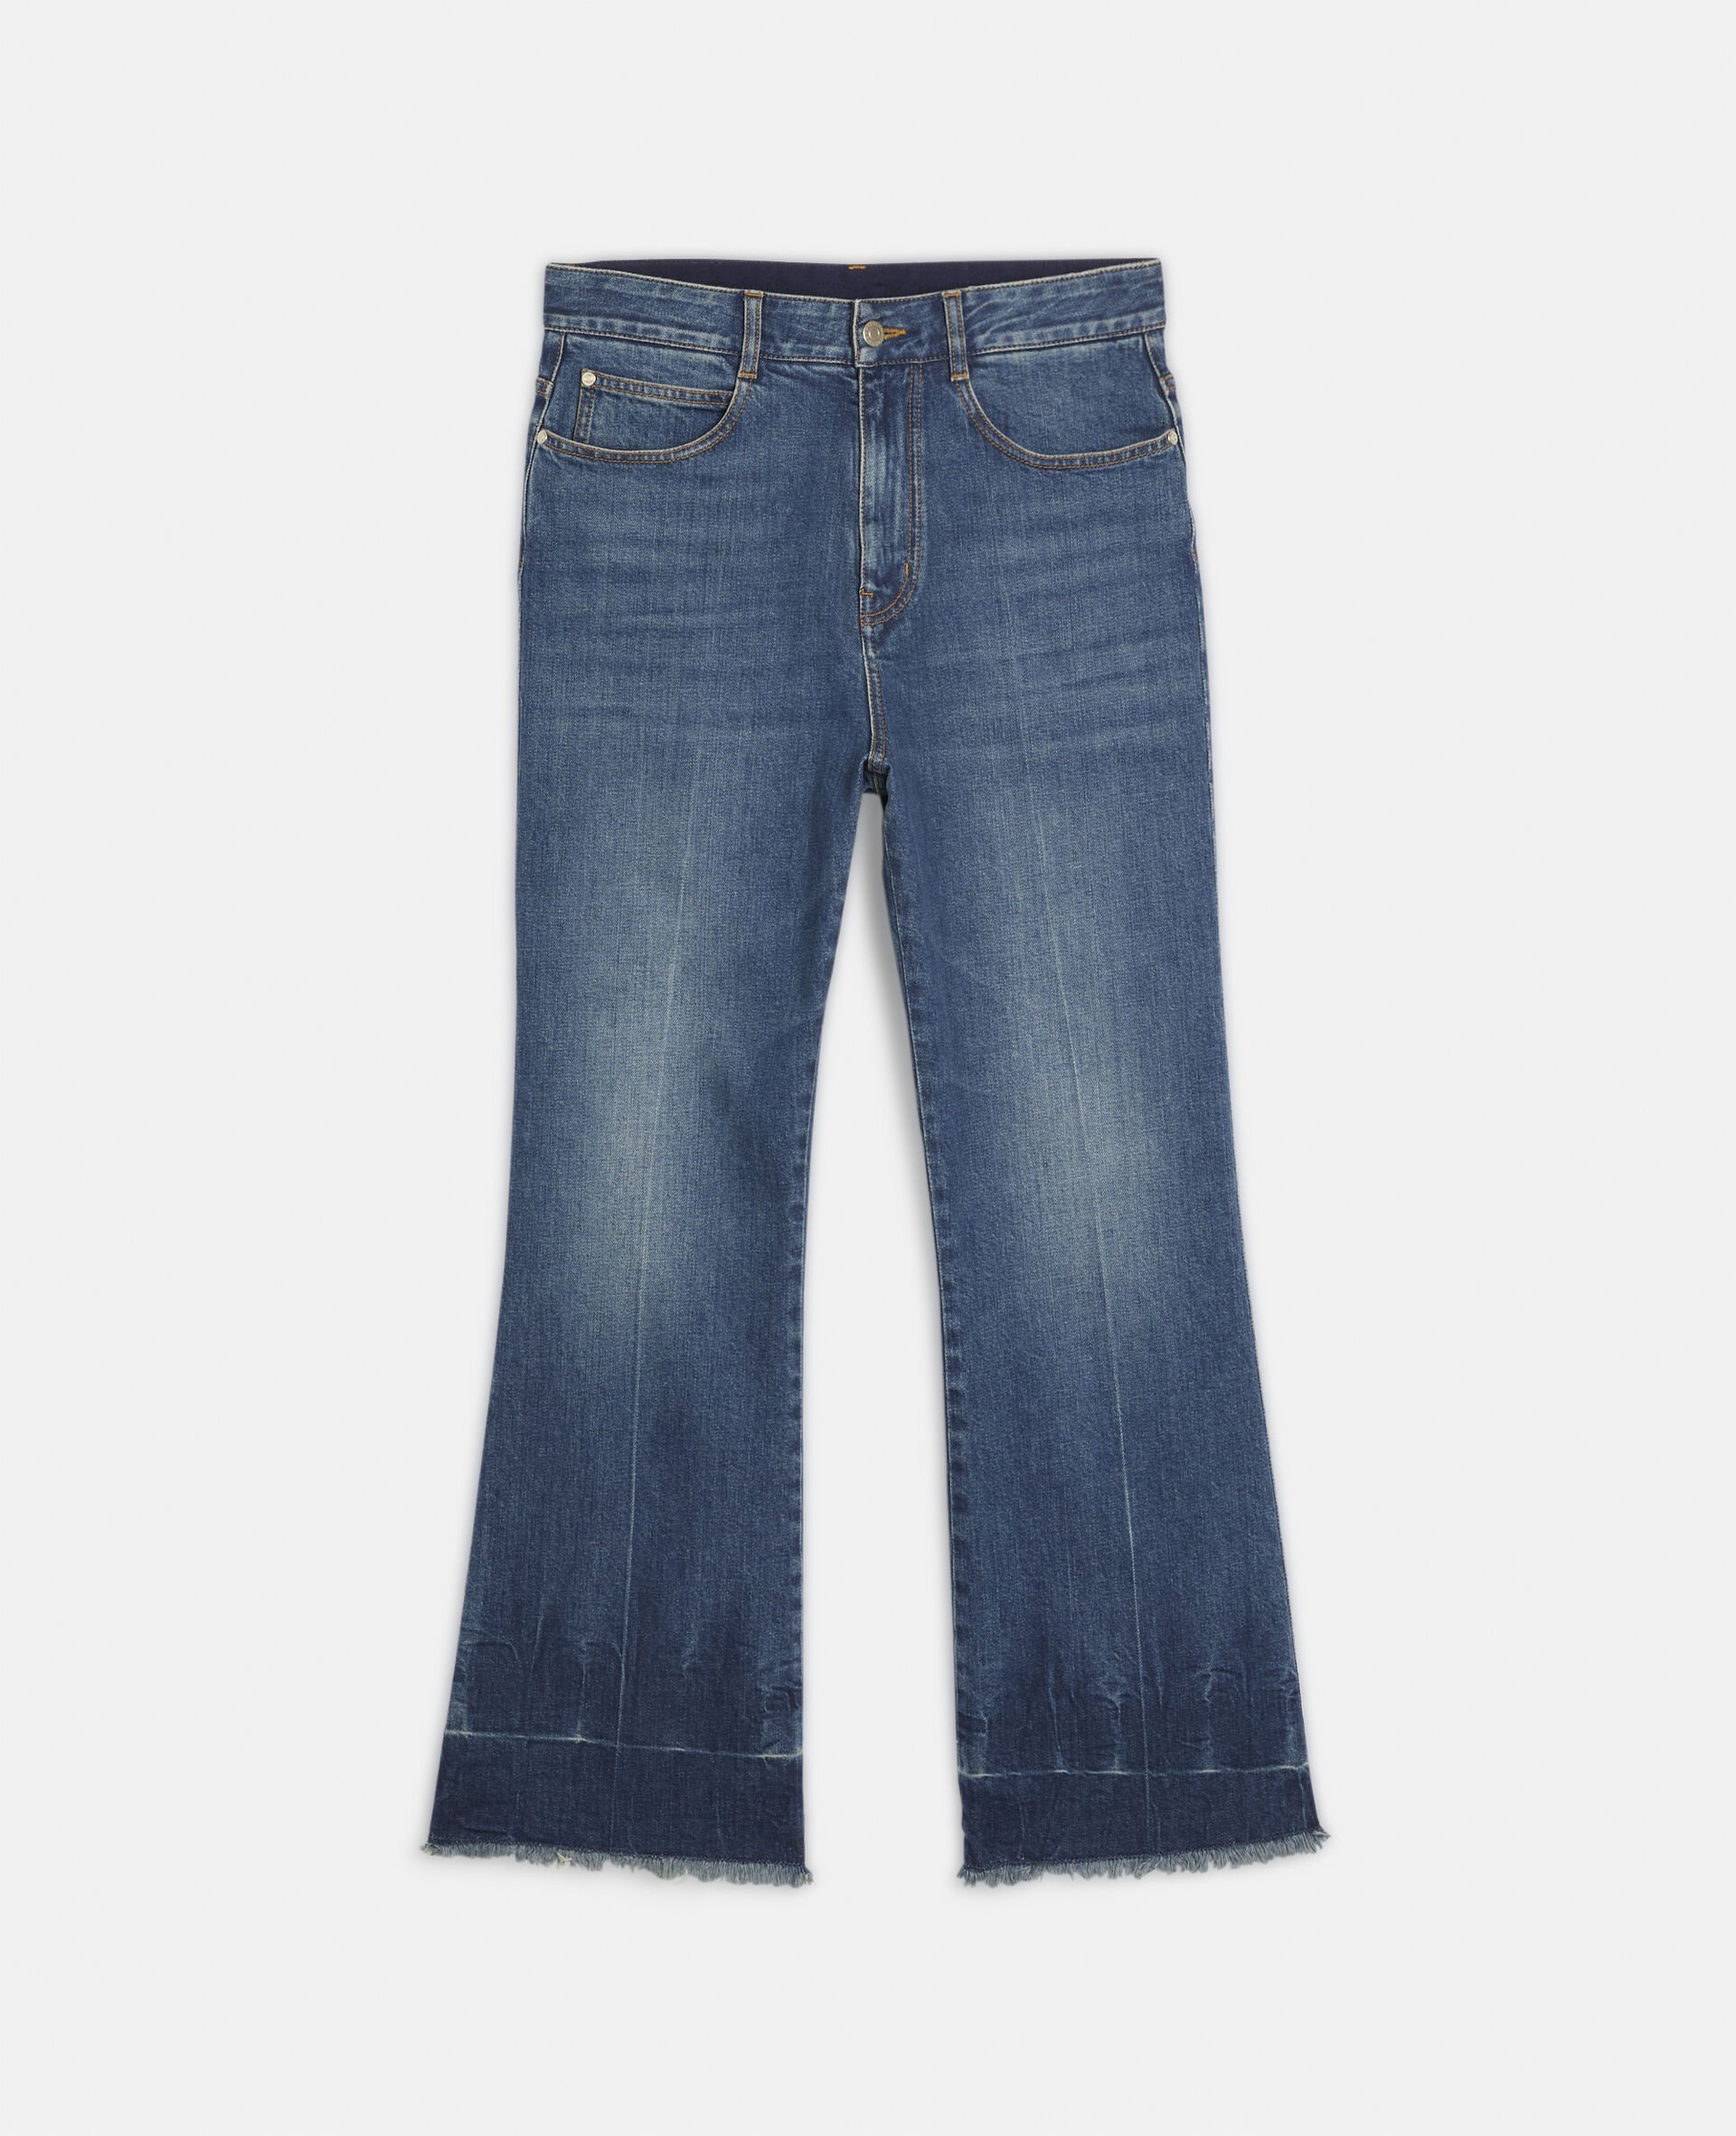 Kick Flare Denim Jeans-Blue-large image number 0